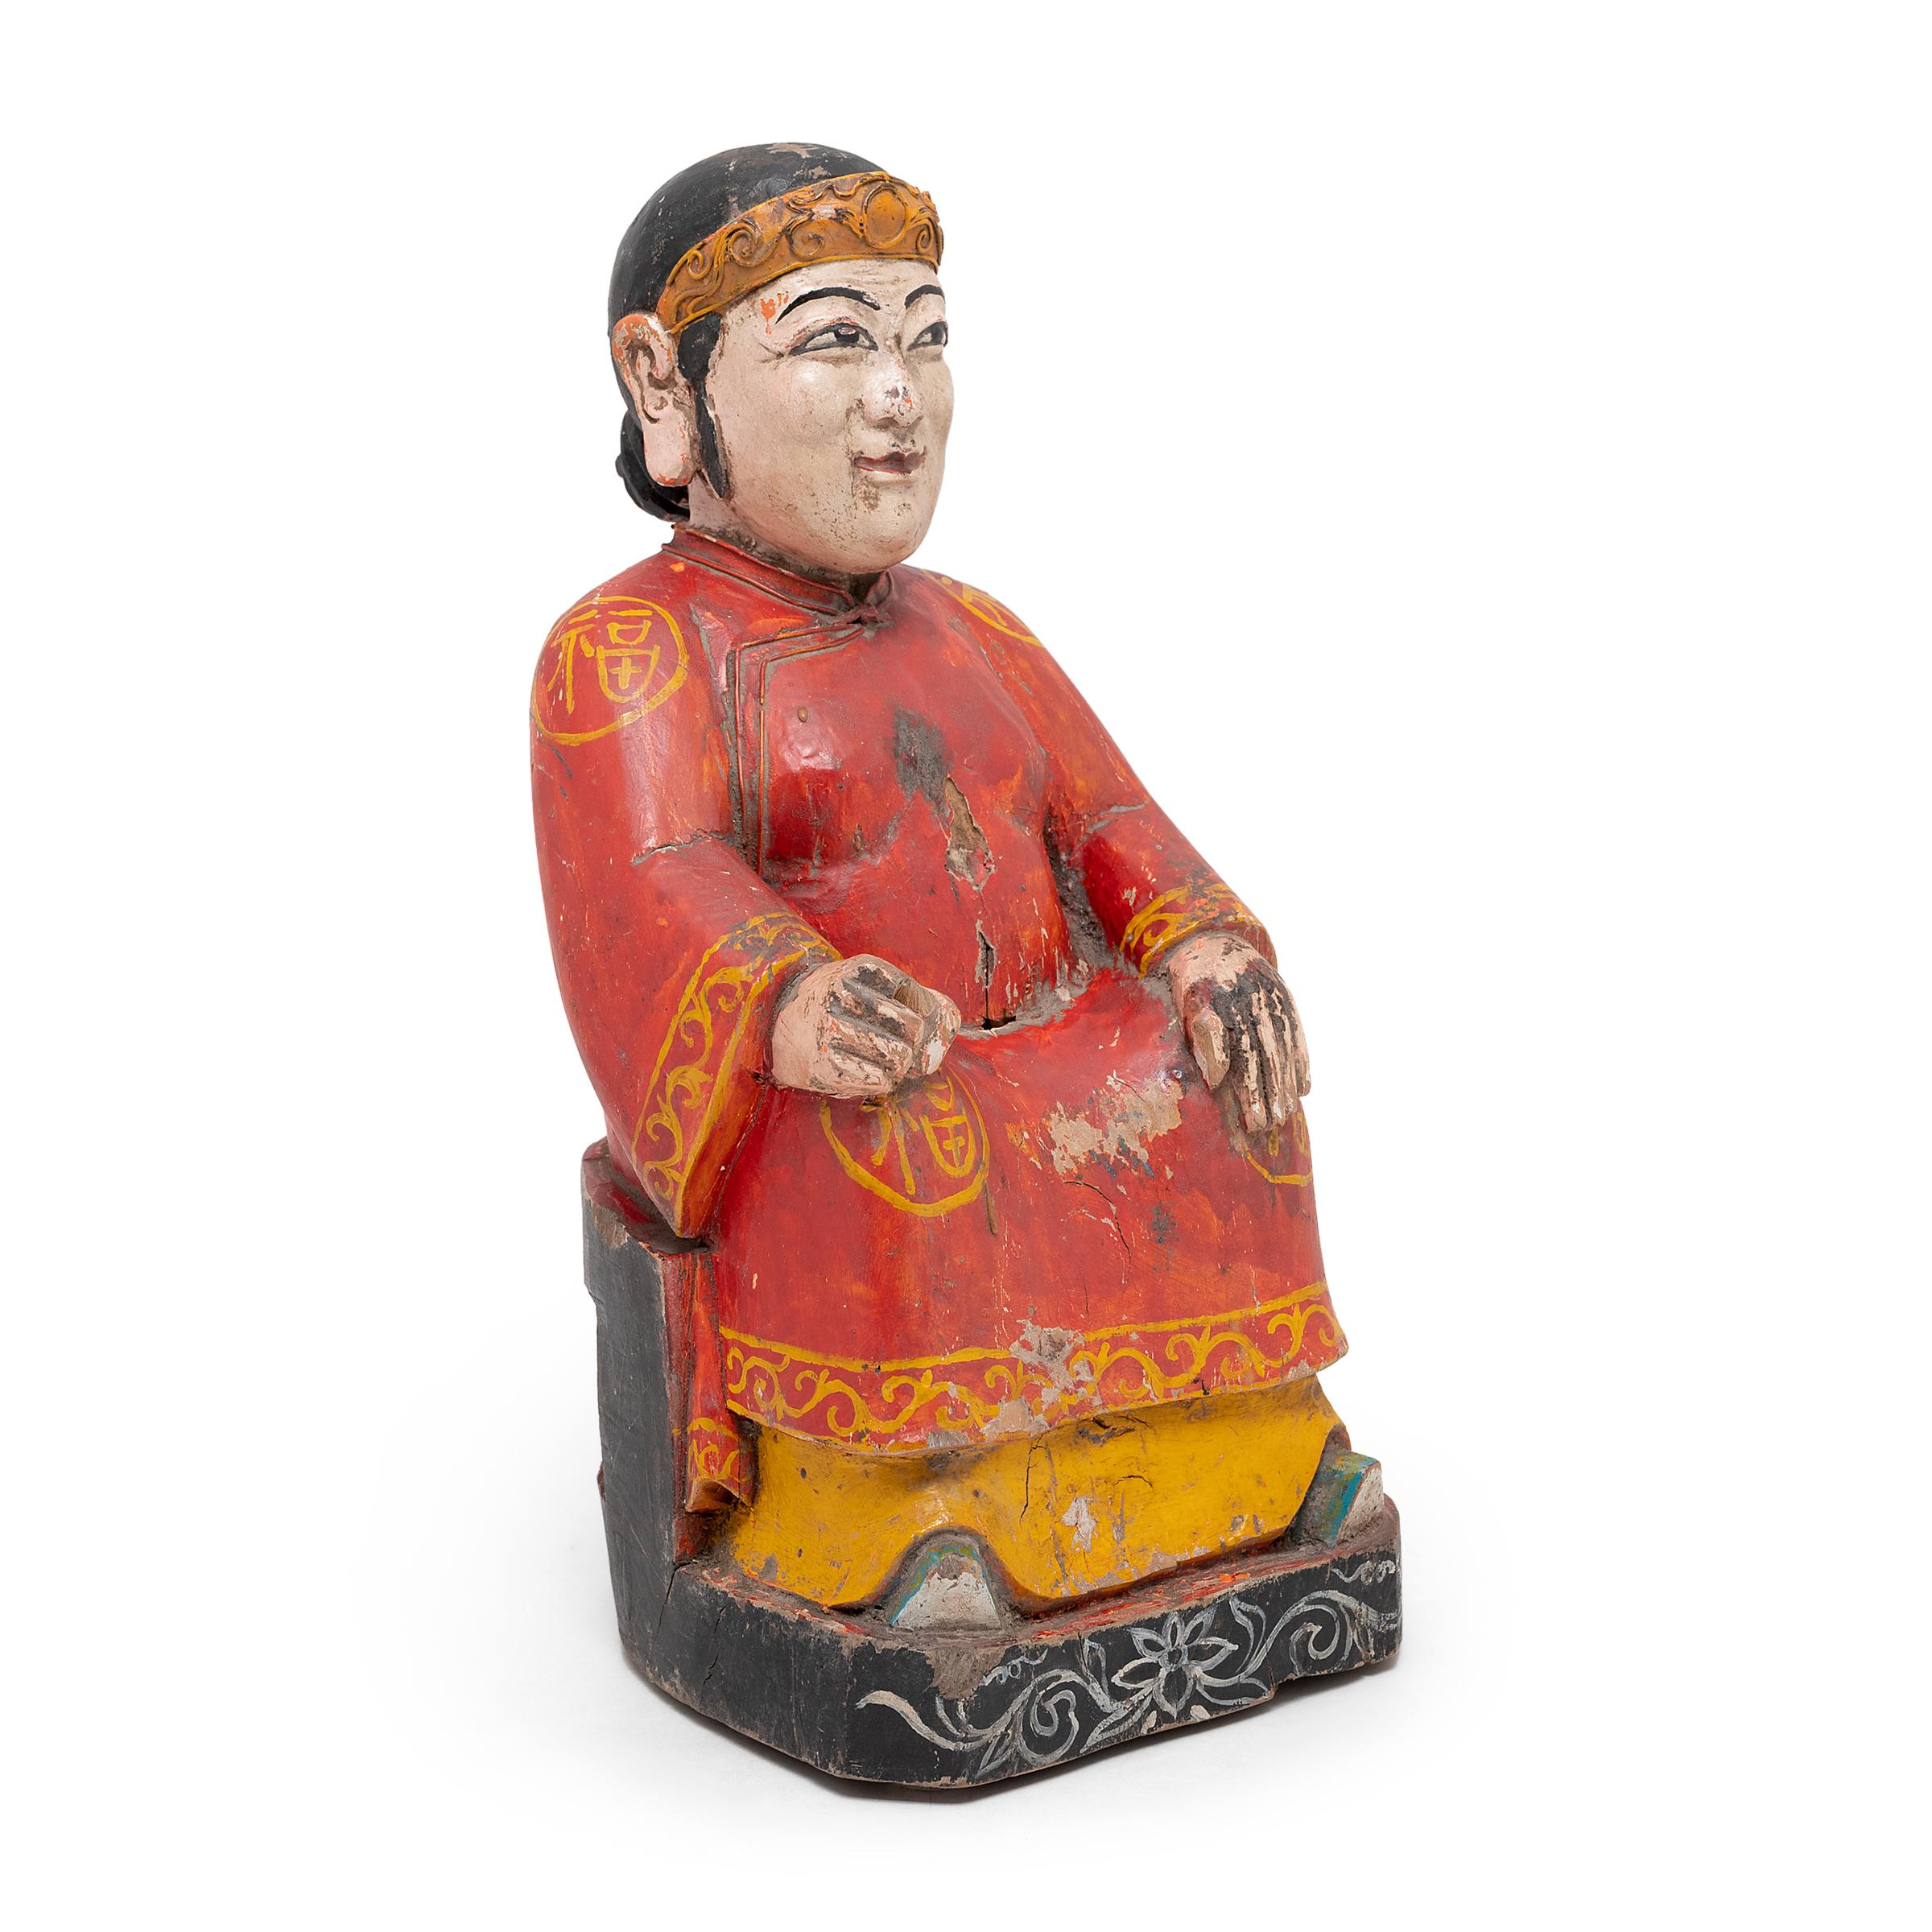 Die Ahnenverehrung vor dem Hausaltar war ein fester Bestandteil des traditionellen chinesischen Hauslebens und wurde oft mit gemalten Ahnenporträts oder Ahnenfiguren auf dem Tisch durchgeführt. Diese sitzende Ahnenfigur aus dem späten 19.